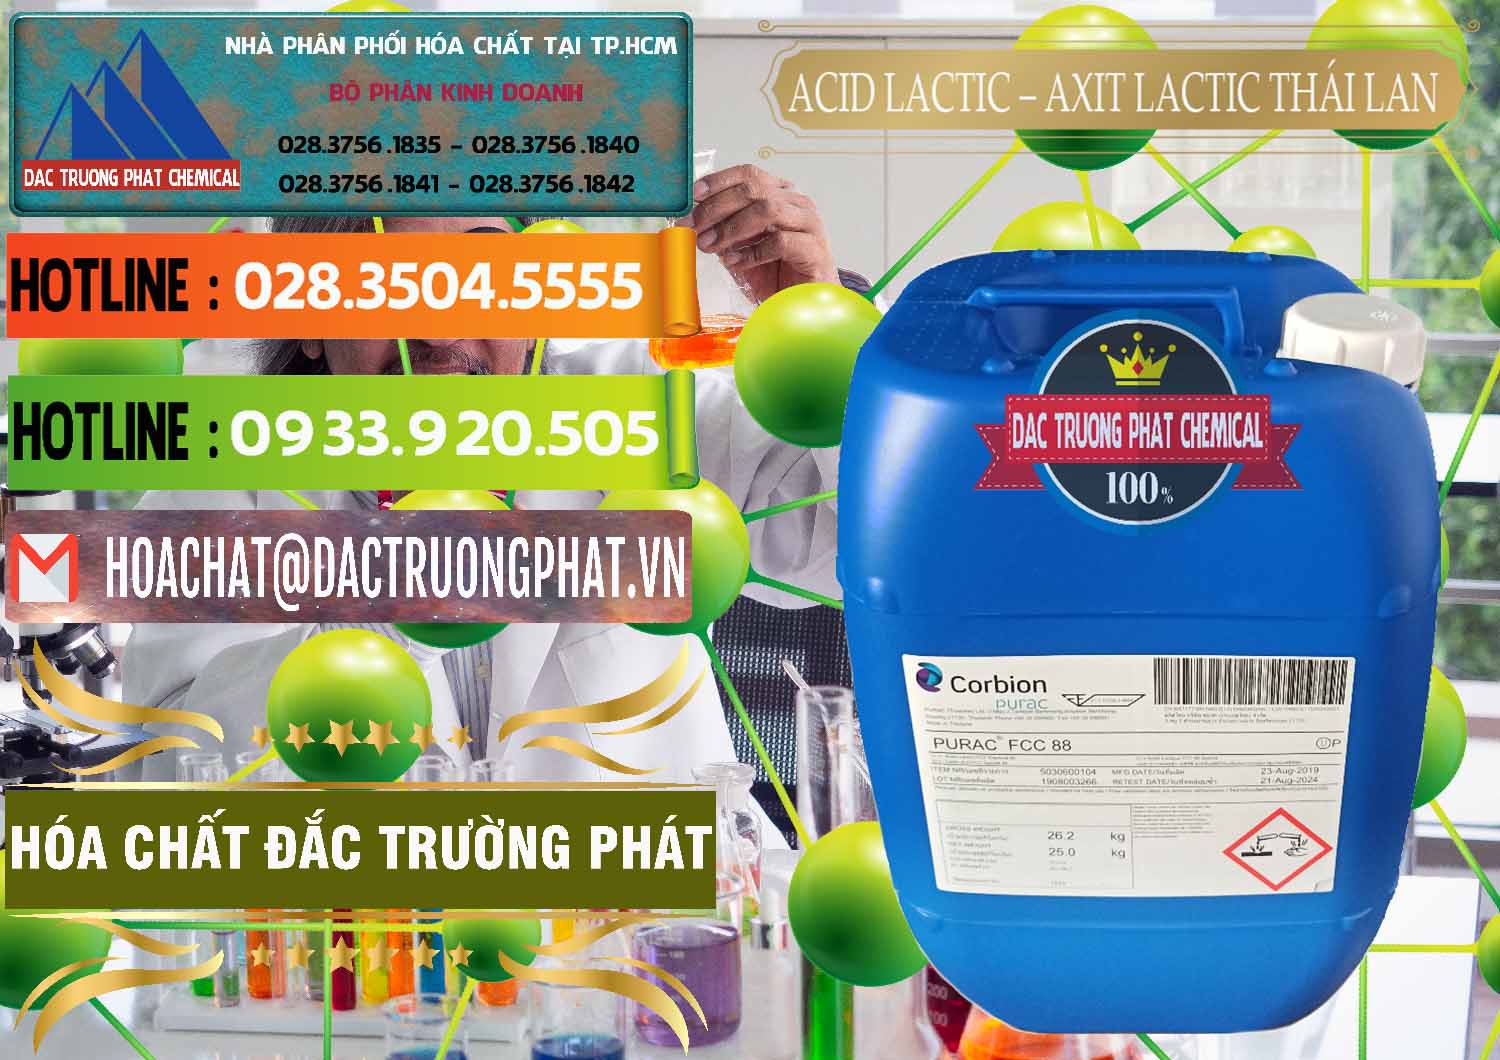 Công ty bán và phân phối Acid Lactic – Axit Lactic Thái Lan Purac FCC 88 - 0012 - Nhà phân phối ( cung cấp ) hóa chất tại TP.HCM - cungcaphoachat.com.vn